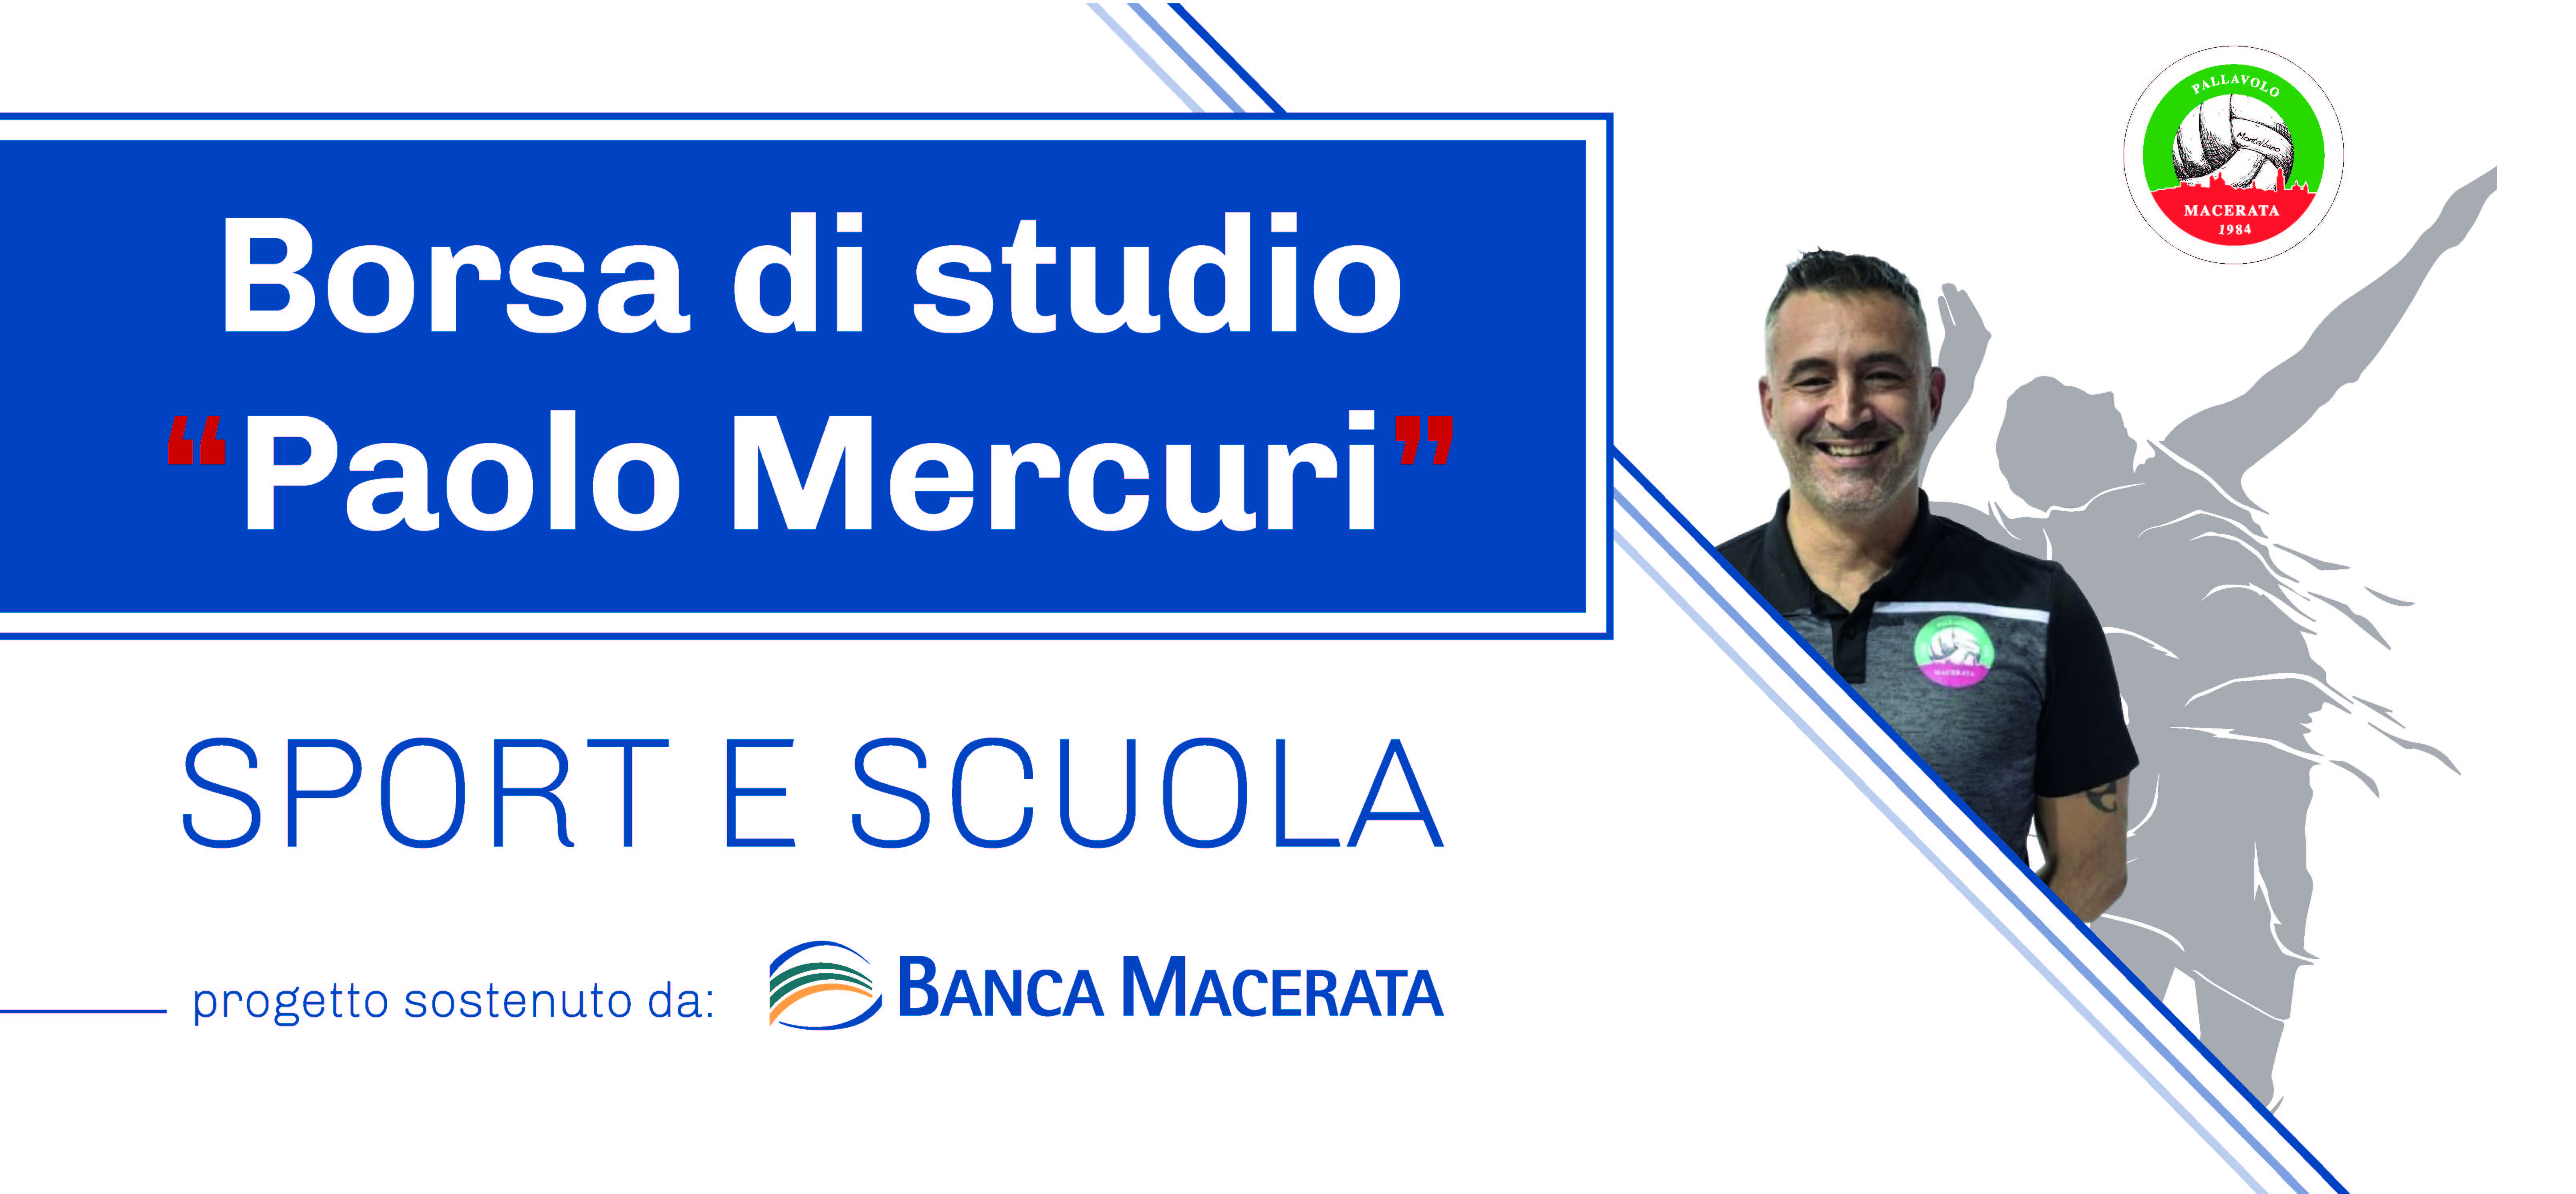 Presentata la Borsa di studio “Paolo Mercuri” | Banca Macerata 1